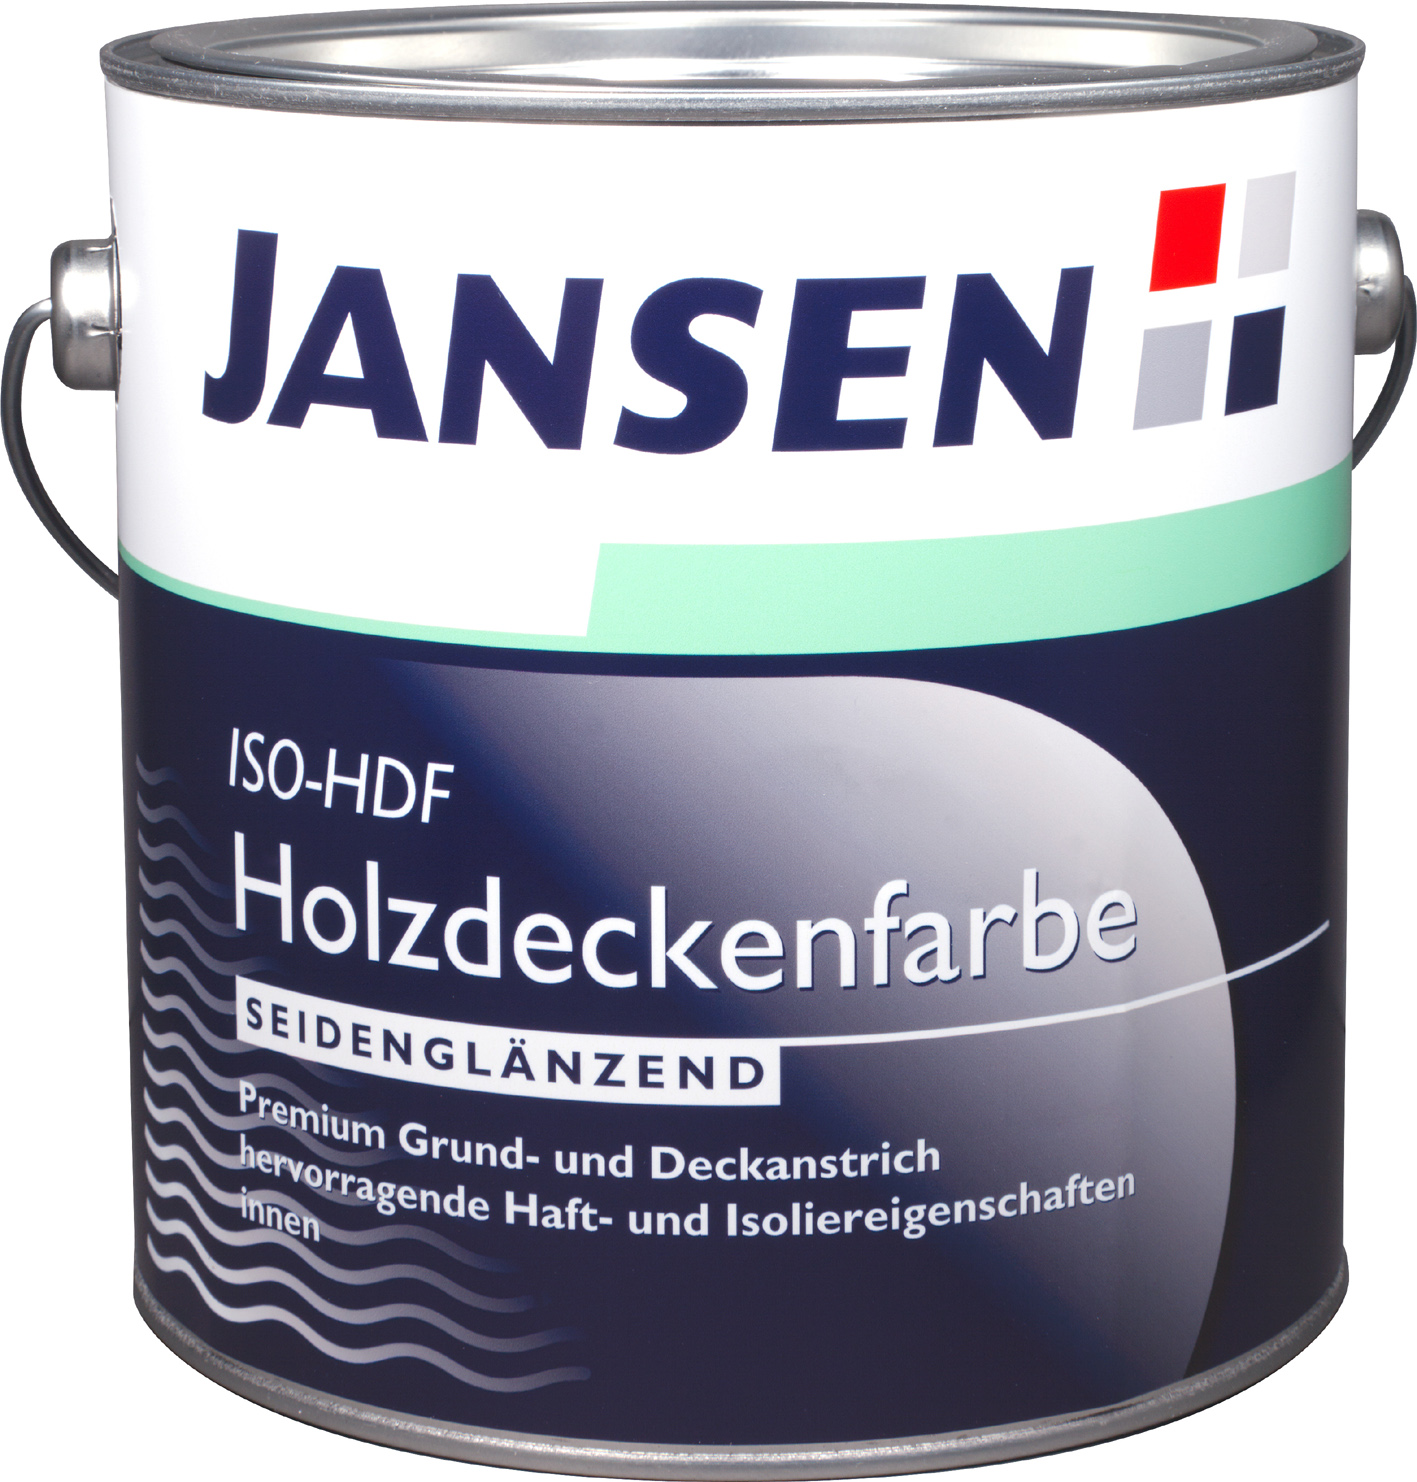 Jansen ISO-HDF Holzdeckenfarbe - 750ml Innen Weiß Seidenglanz